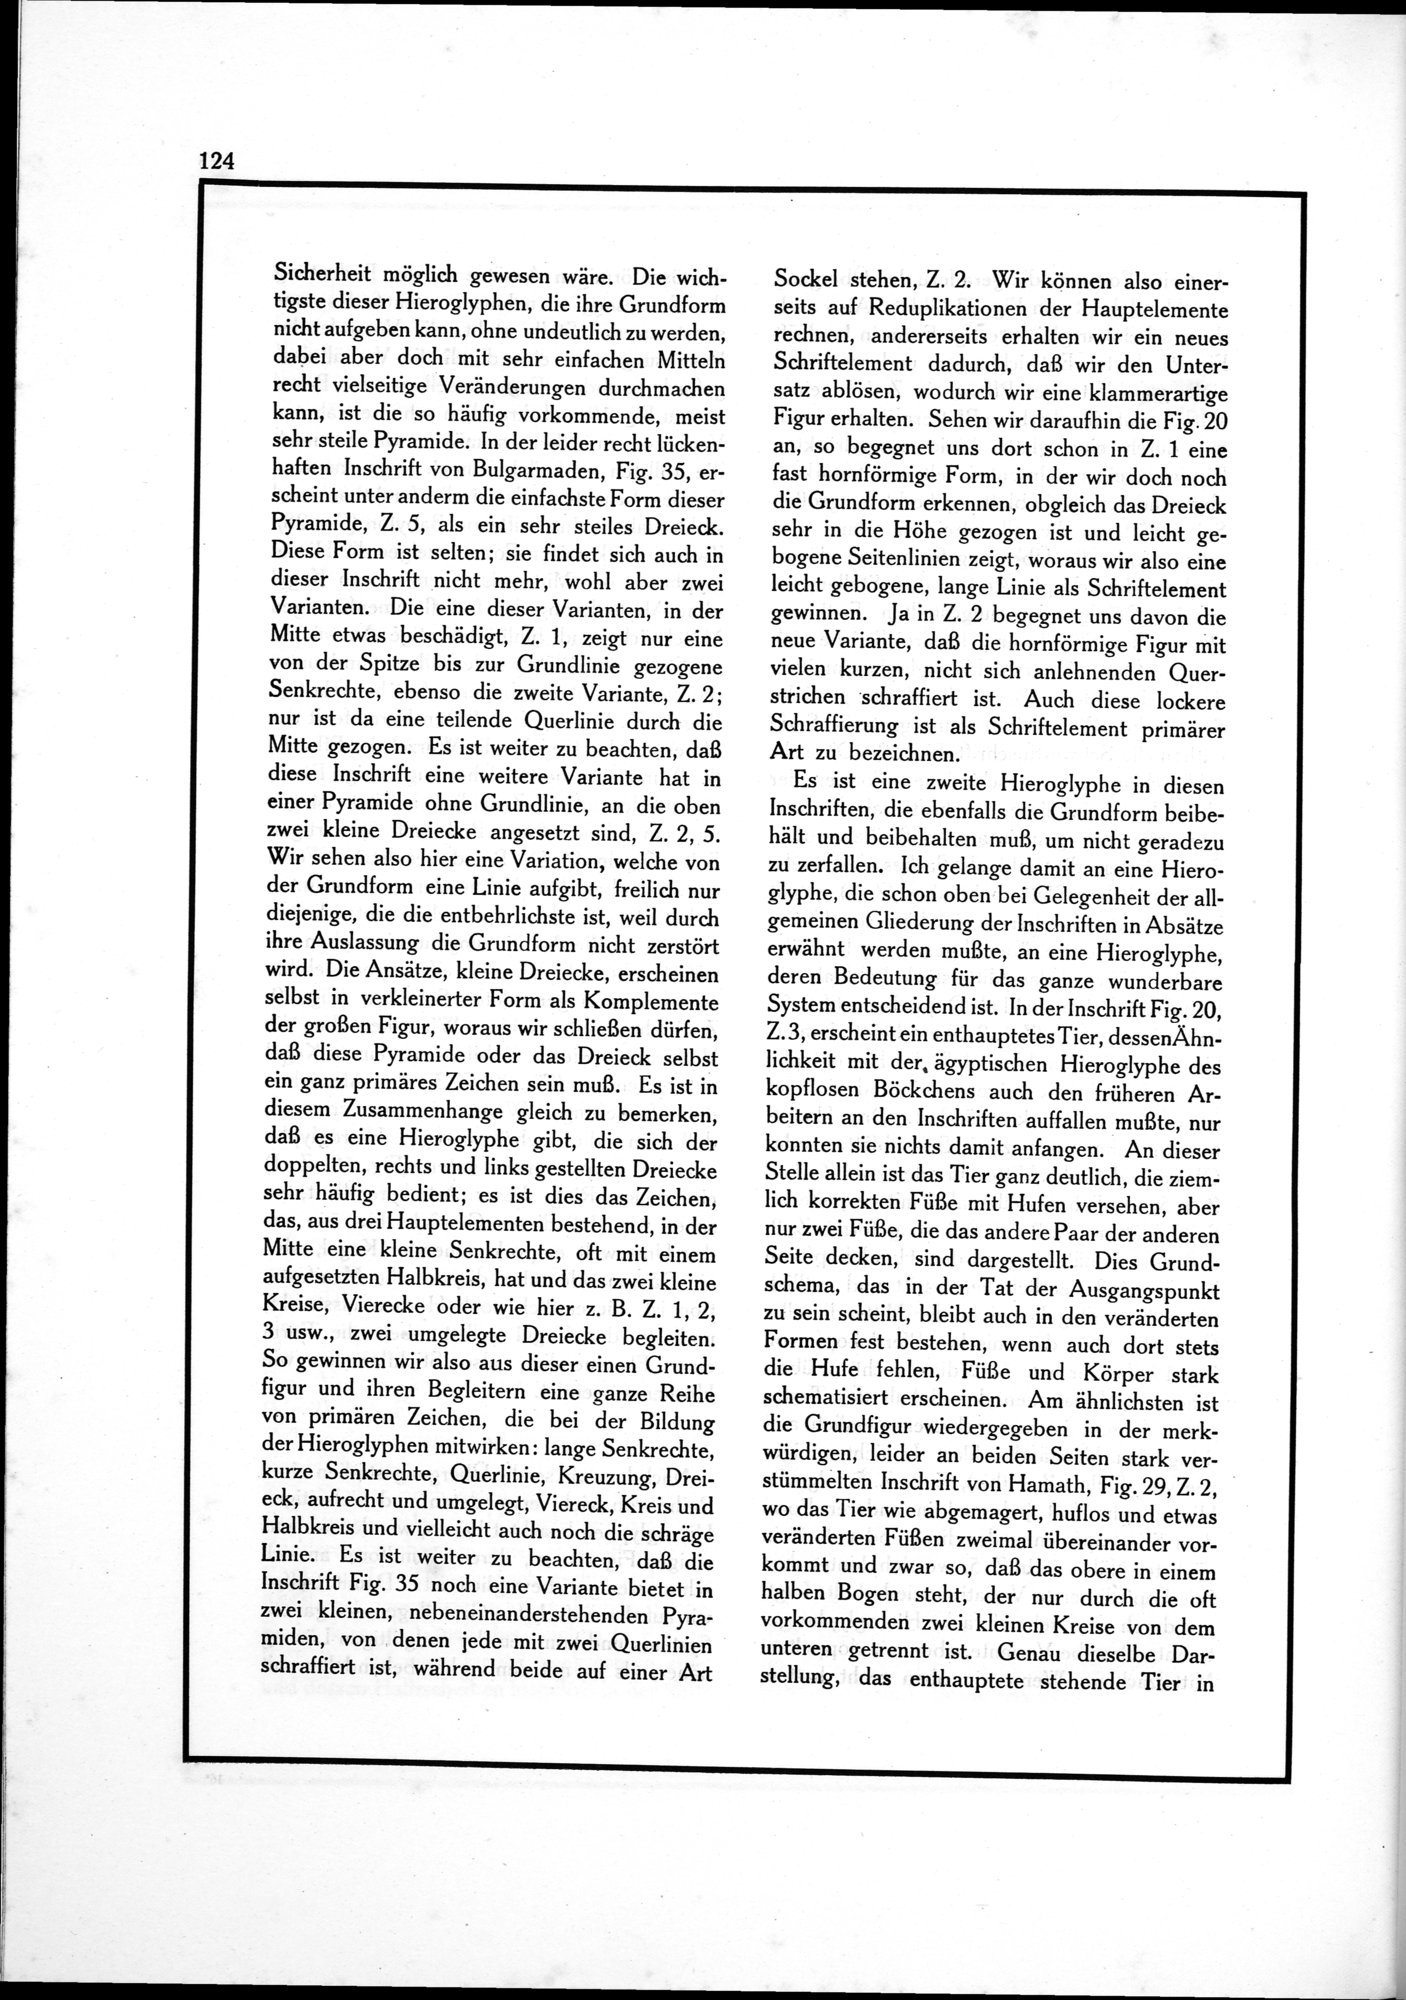 Die Teufel des Avesta und Ihre Beziehungen zur Ikonographie des Buddhismus Zentral-Asiens : vol.1 / Page 128 (Grayscale High Resolution Image)